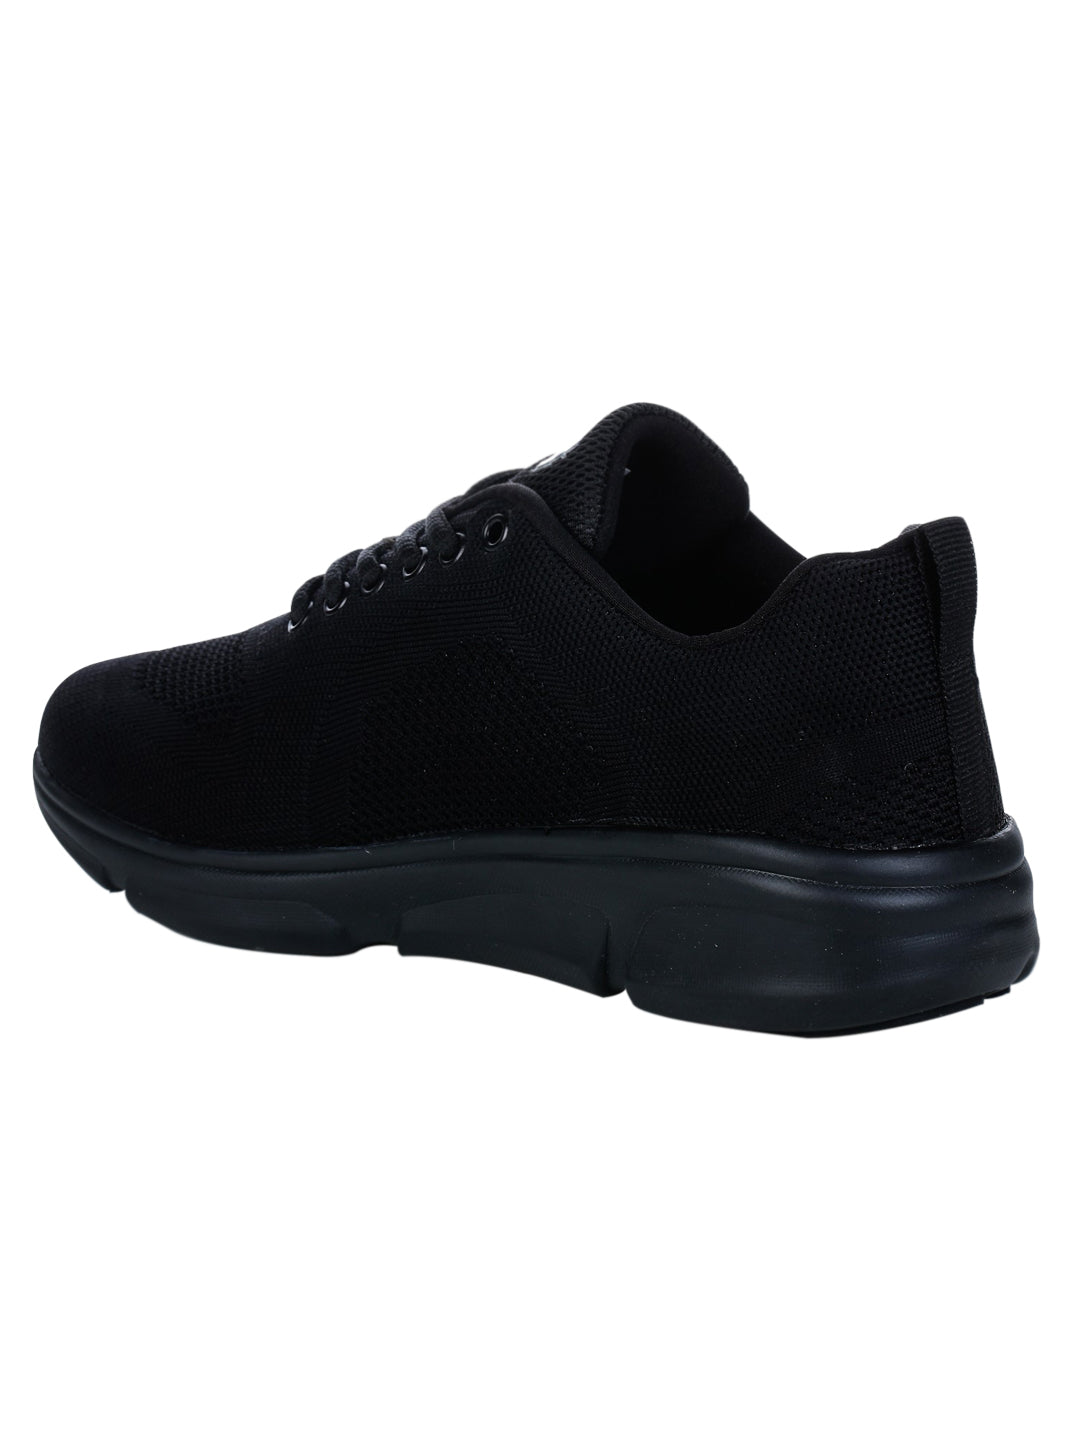 Footwear, Men Footwear, Black Running Shoes